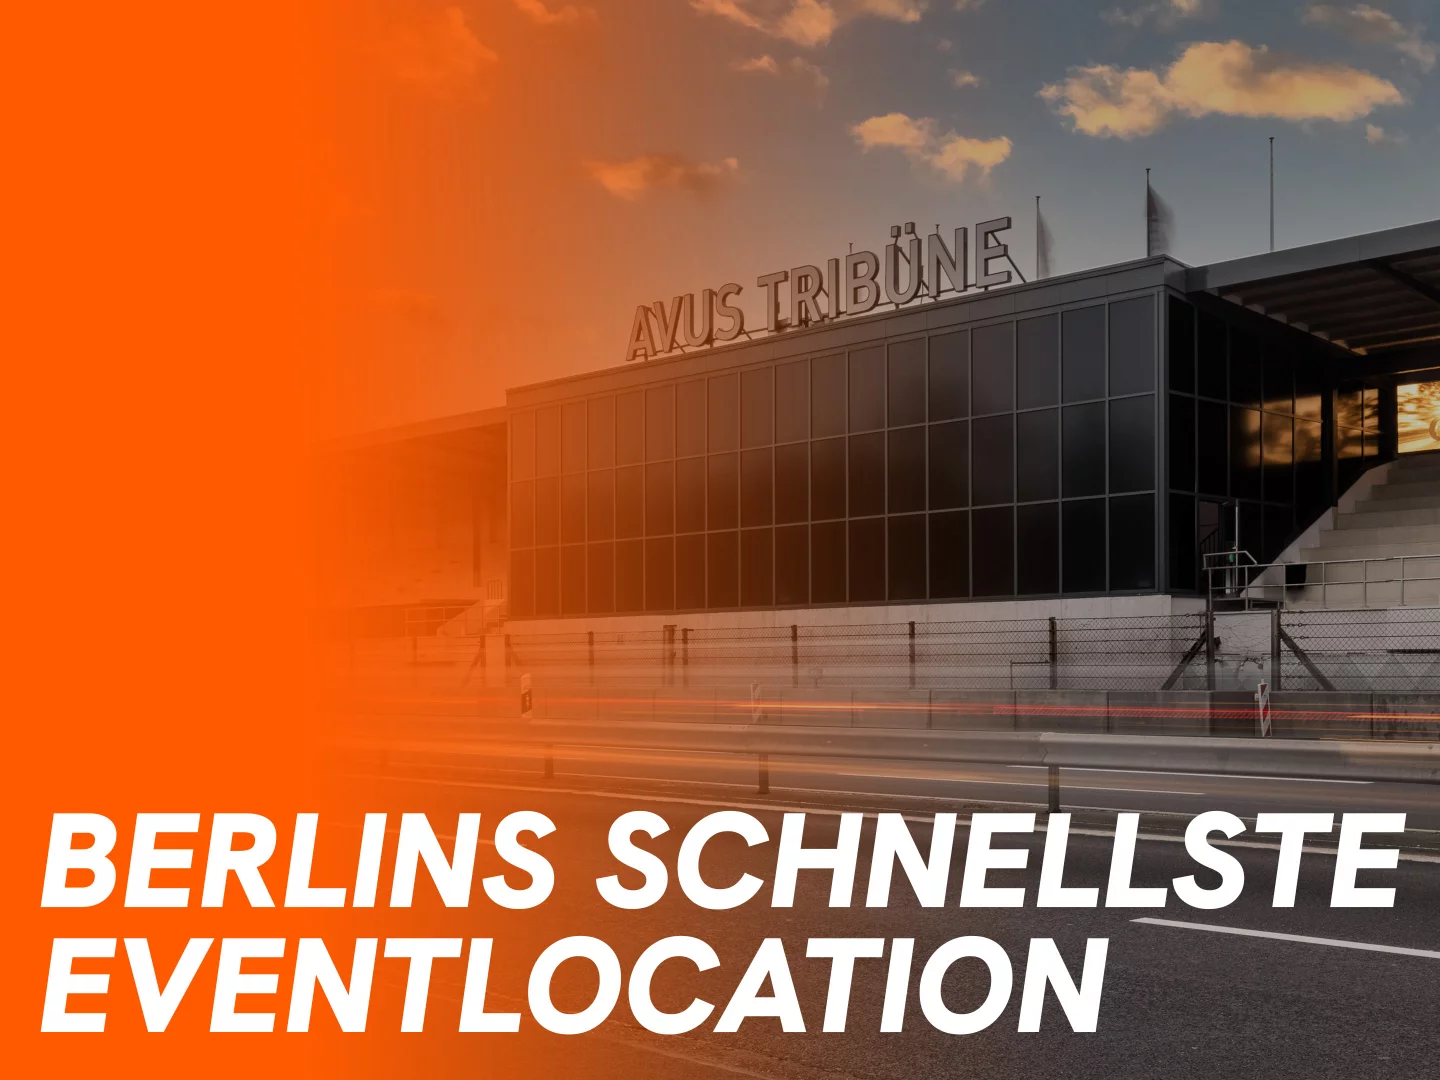 Berlins schnellste Eventlocation - Avus